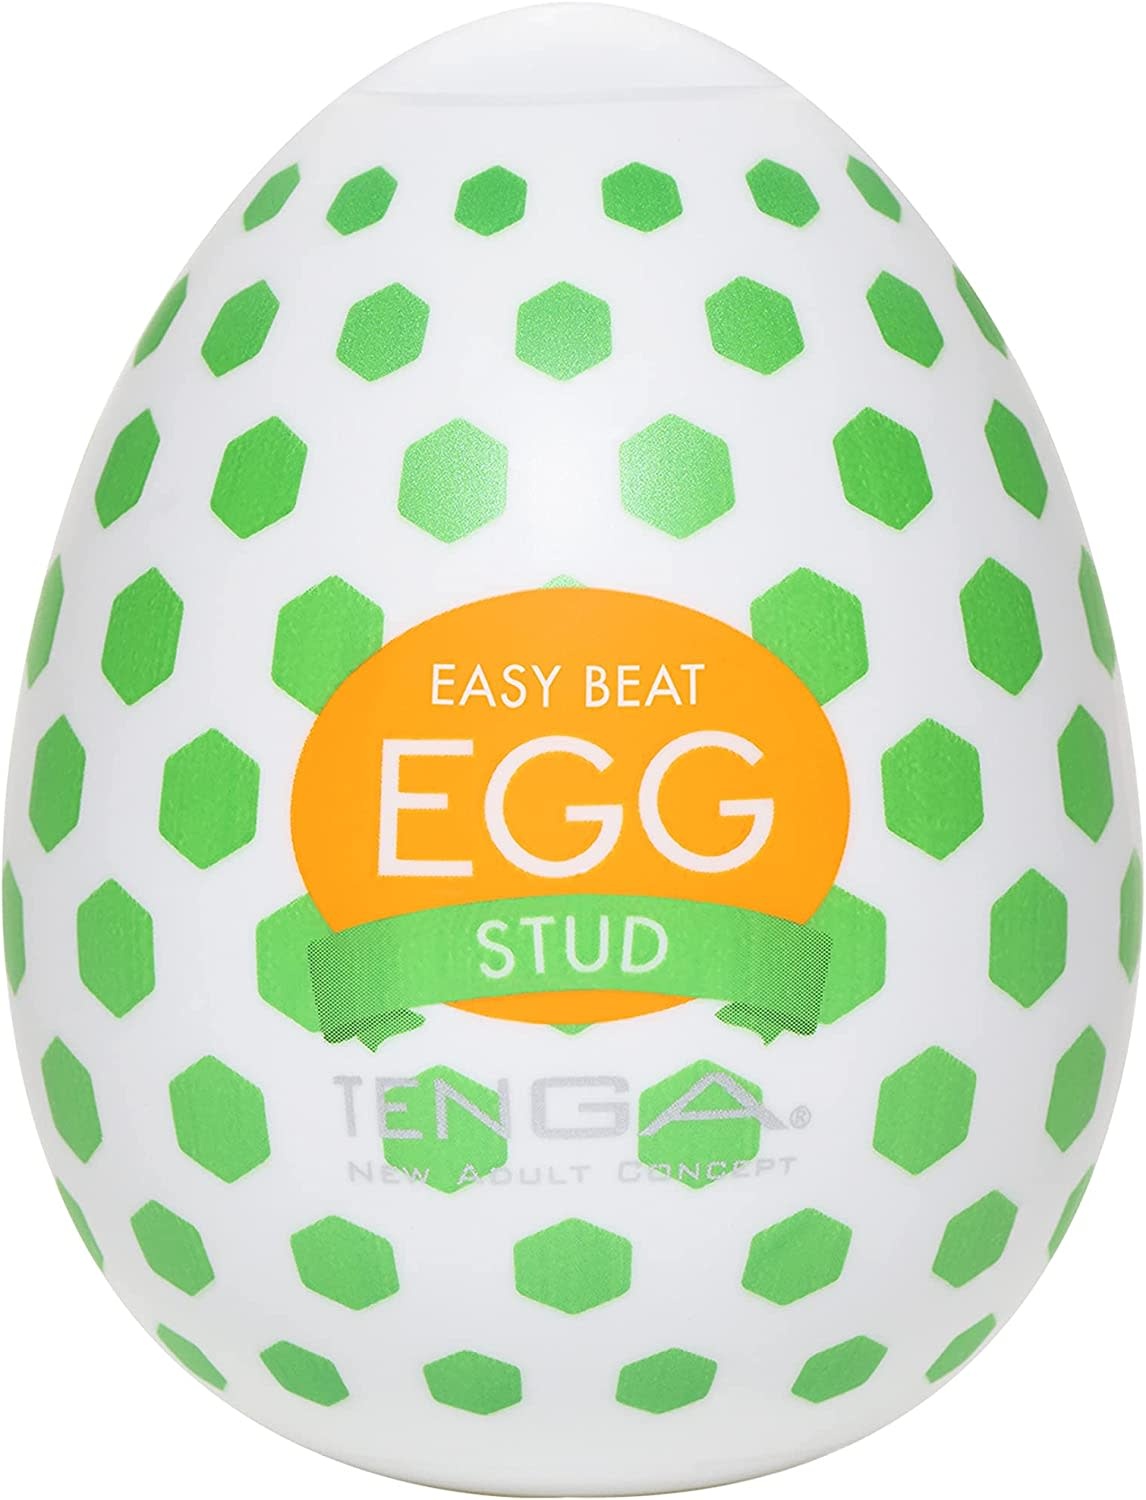 Adult Sex Toy - Best Tenga Egg Male Masturbator Stud